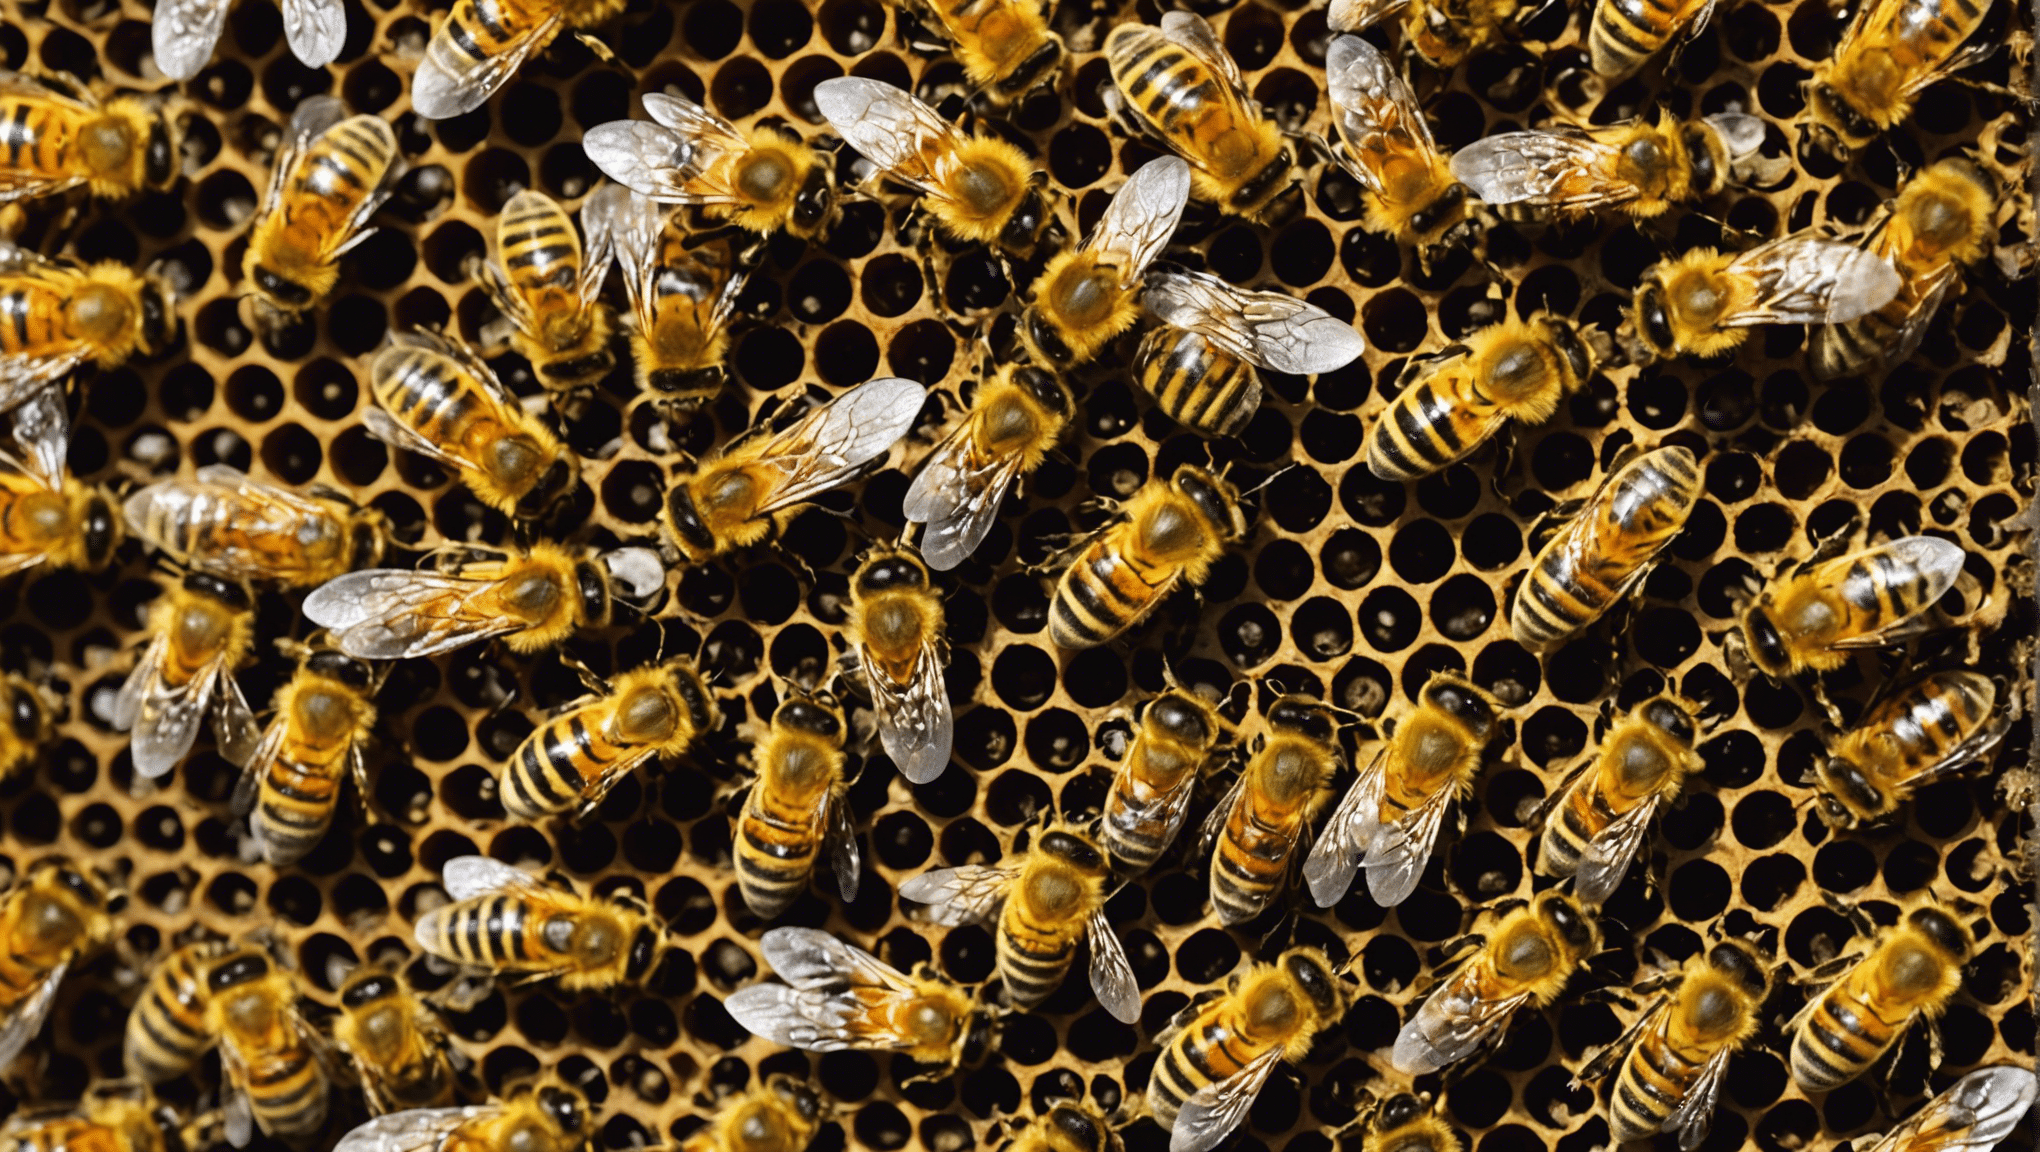 scoprire l'importanza cruciale delle api nel preservare la biodiversità e le ragioni per cui sono essenziali per il nostro ecosistema.